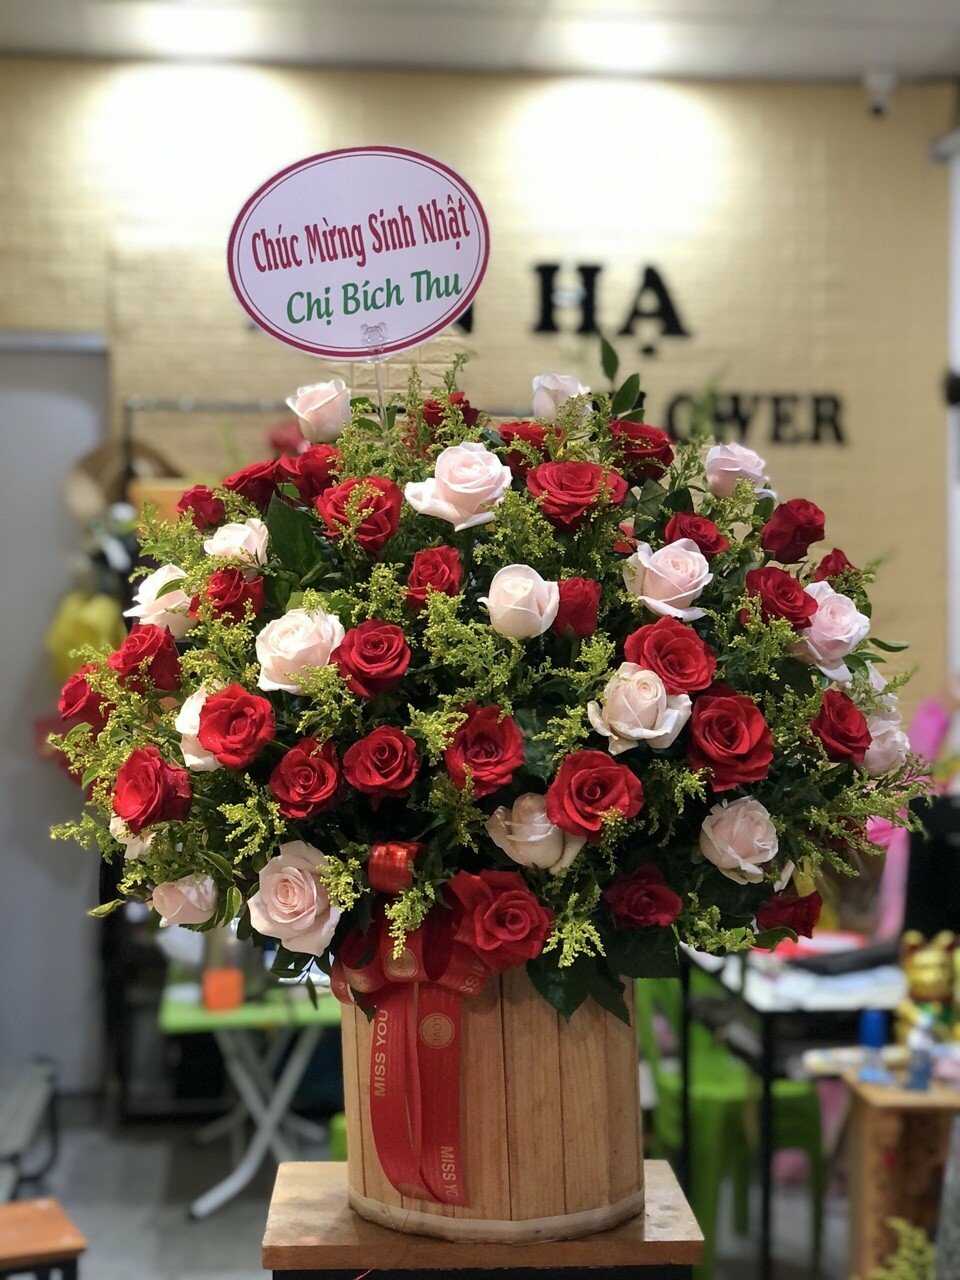 Gửi hình sản phẩm hoa trước và sau khi giao – Cửa hàng hoa huyện Thuận Thành, Bắc Ninh